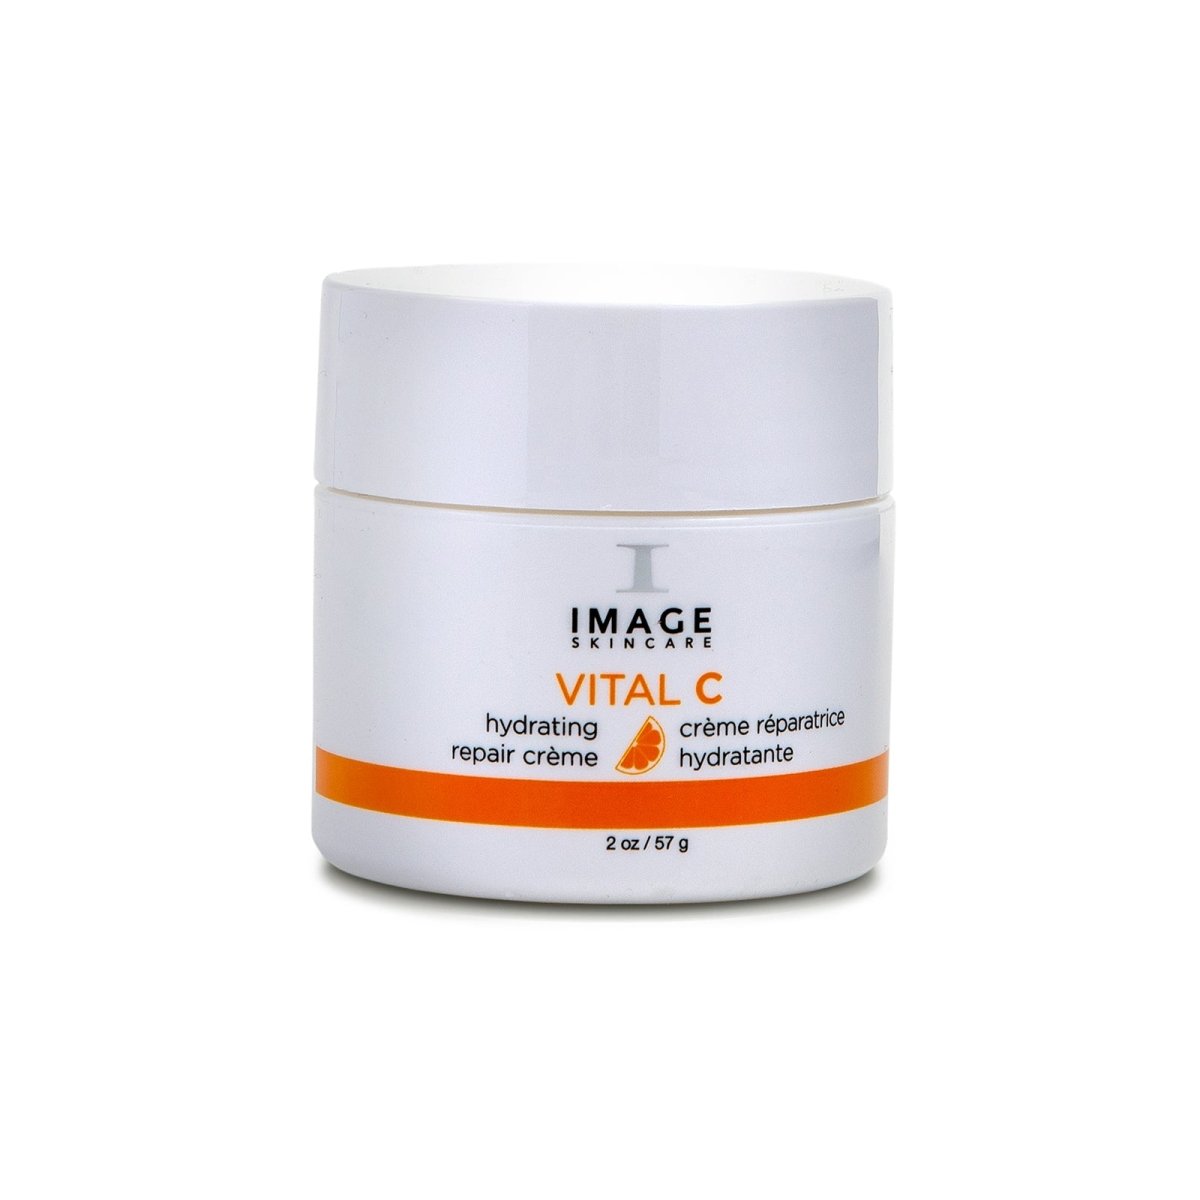 Image of IMAGE Skincare Vital C Hydrating Repair Crème